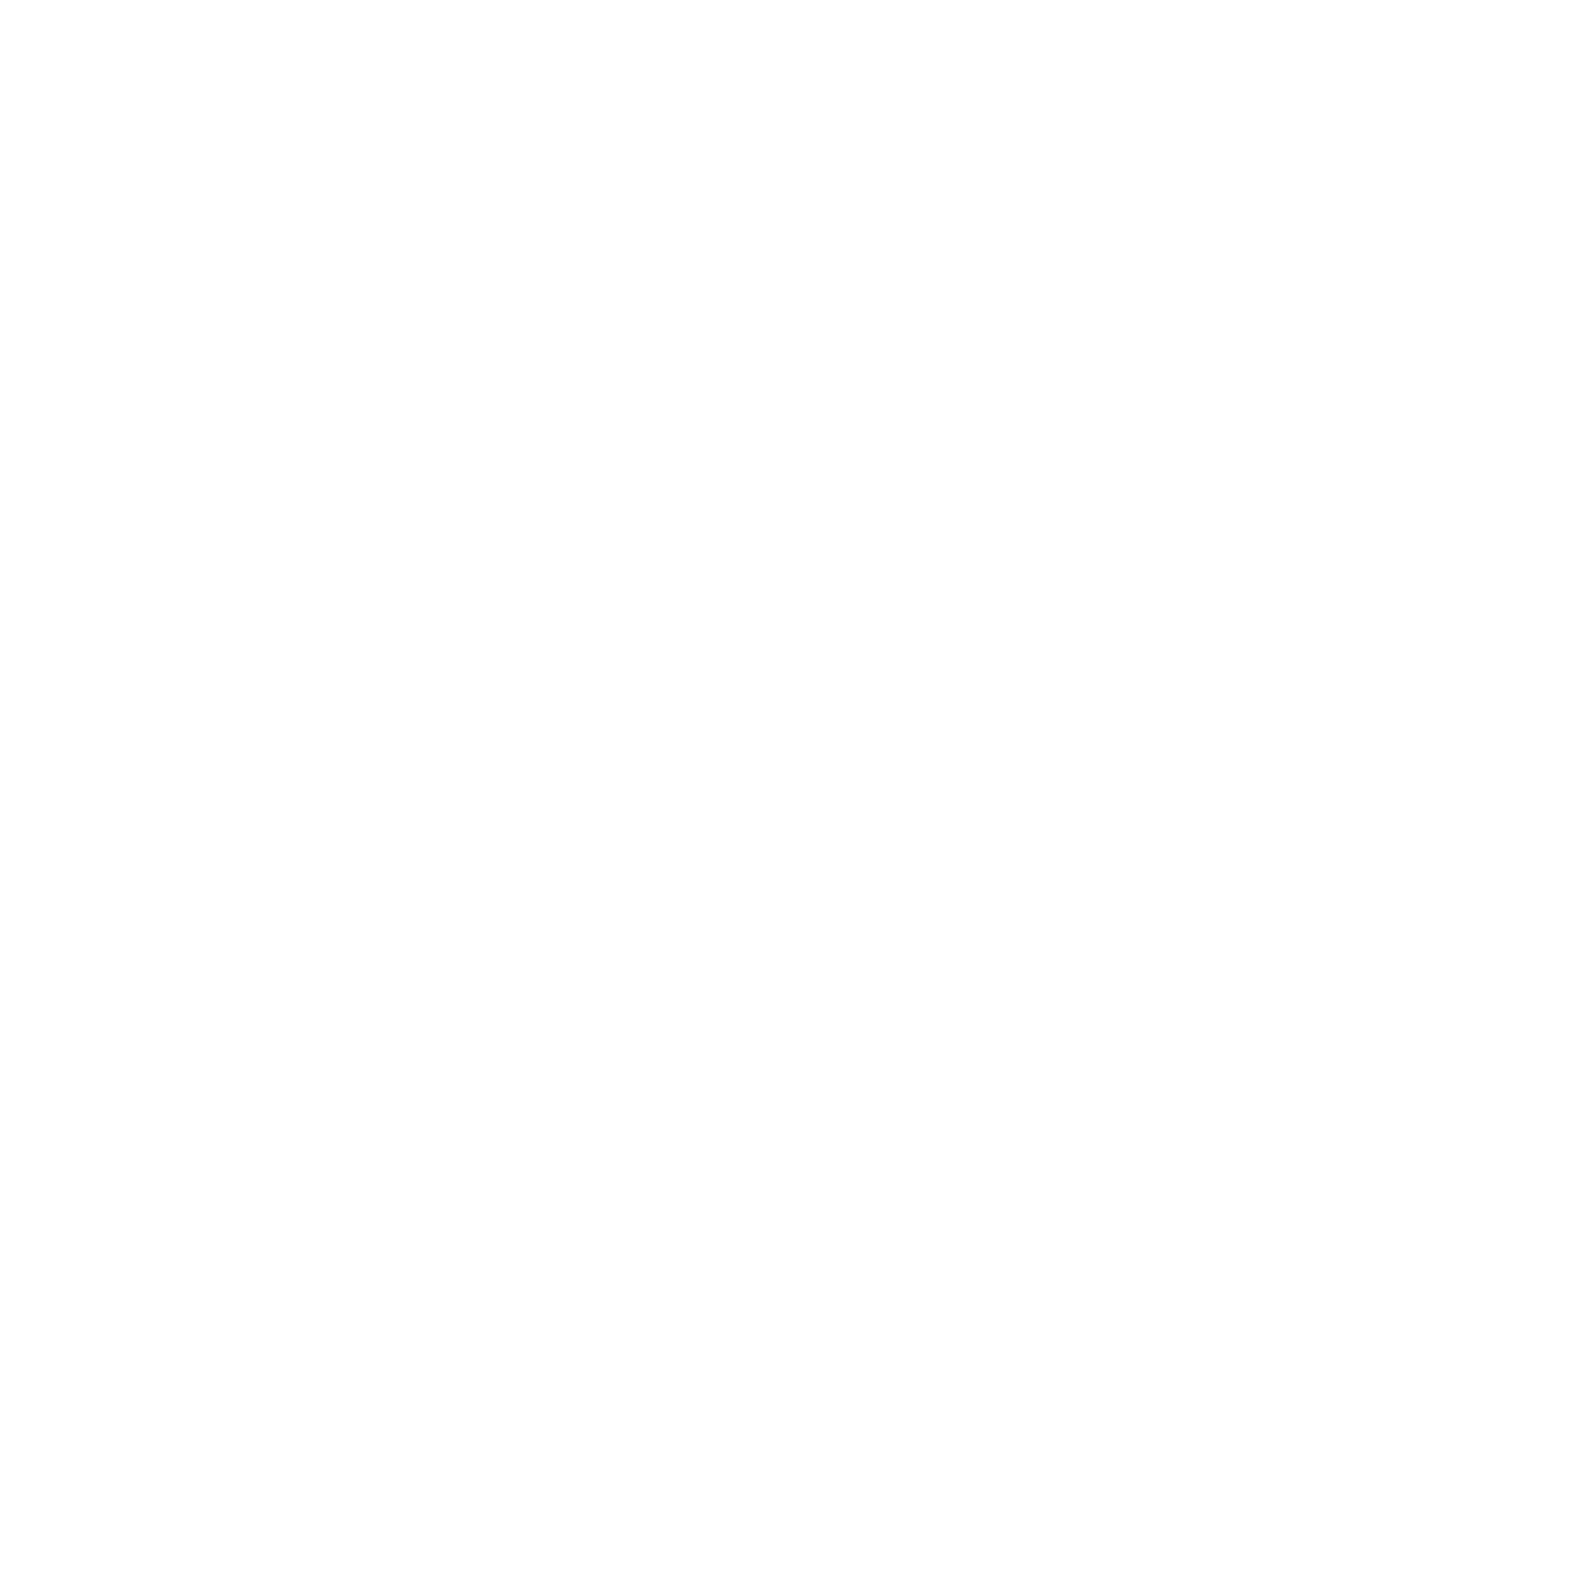 TD Synnex logo pour fonds sombres (PNG transparent)